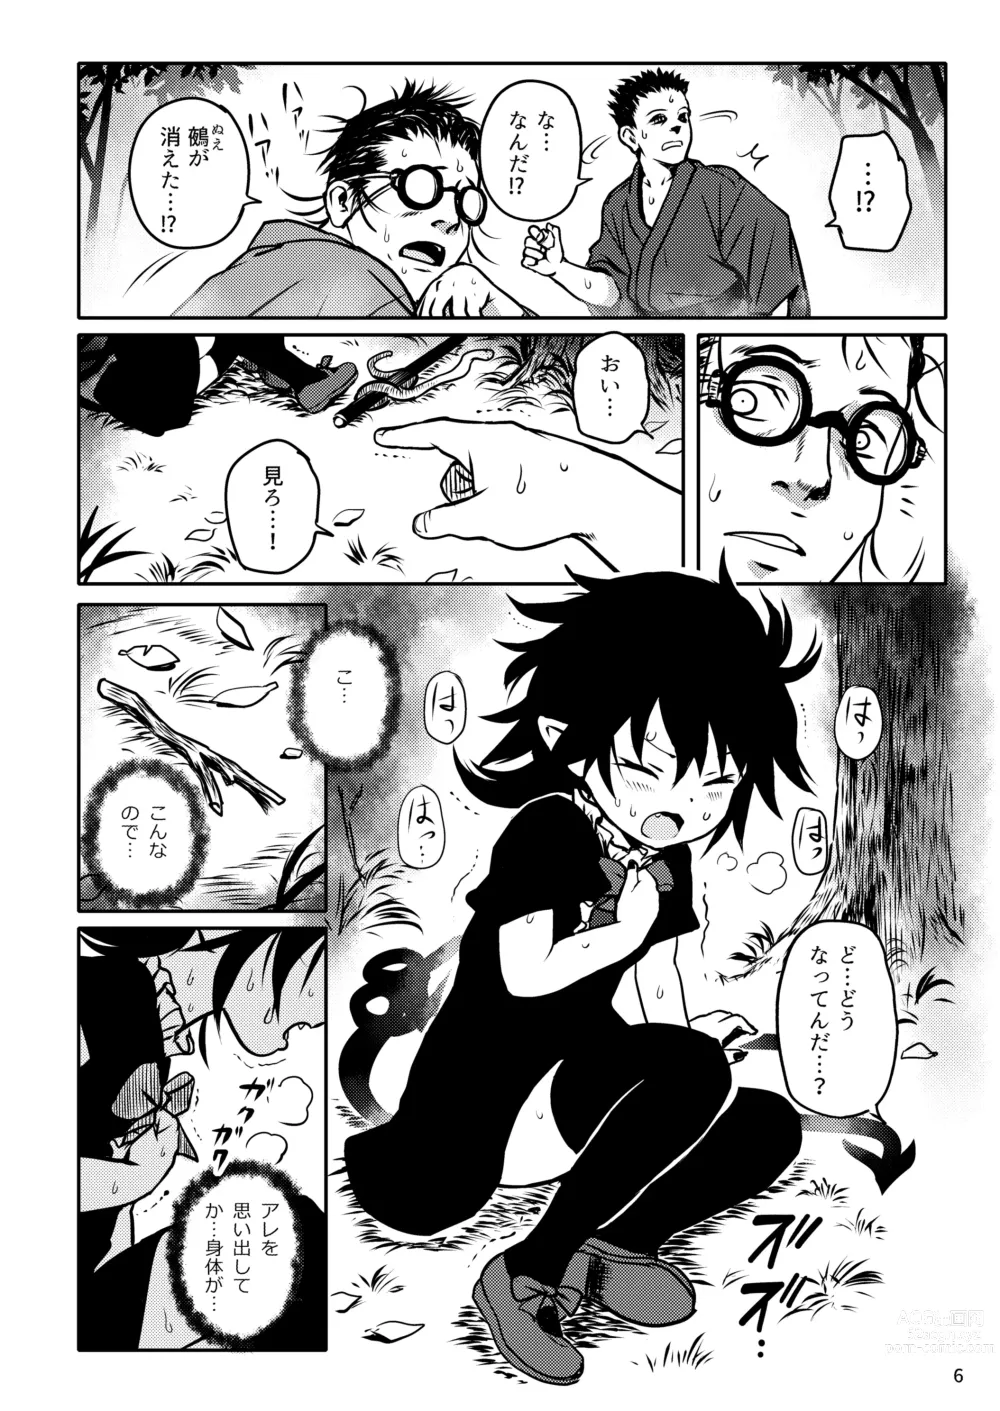 Page 6 of doujinshi Trauma! Nue-chan!